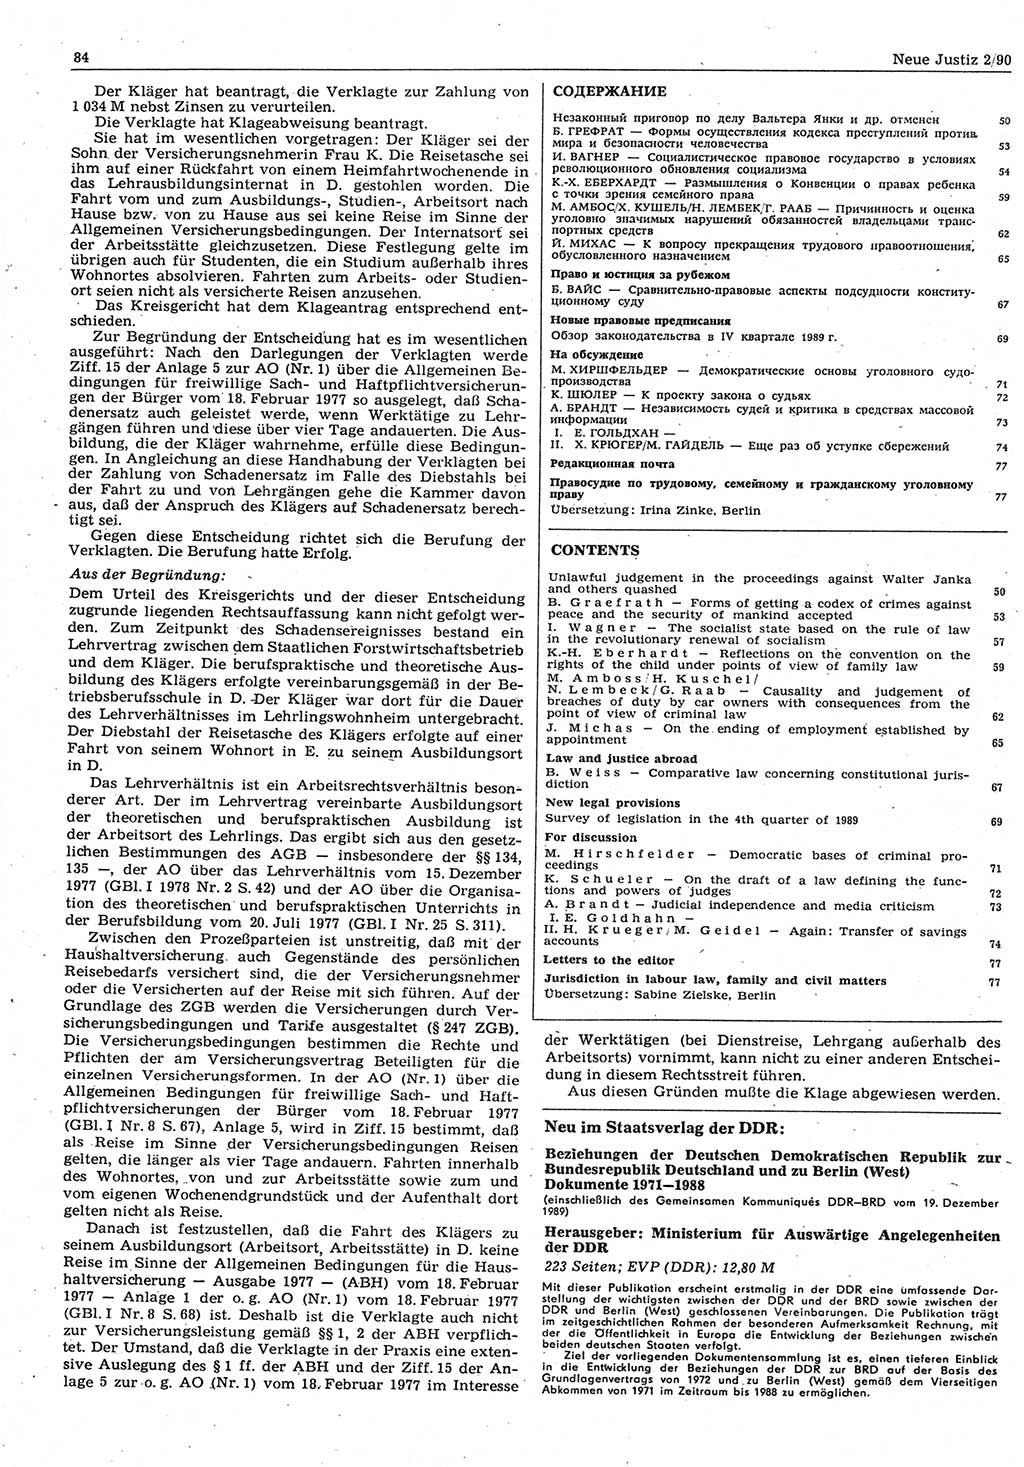 Neue Justiz (NJ), Zeitschrift für Rechtsetzung und Rechtsanwendung [Deutsche Demokratische Republik (DDR)], 44. Jahrgang 1990, Seite 84 (NJ DDR 1990, S. 84)